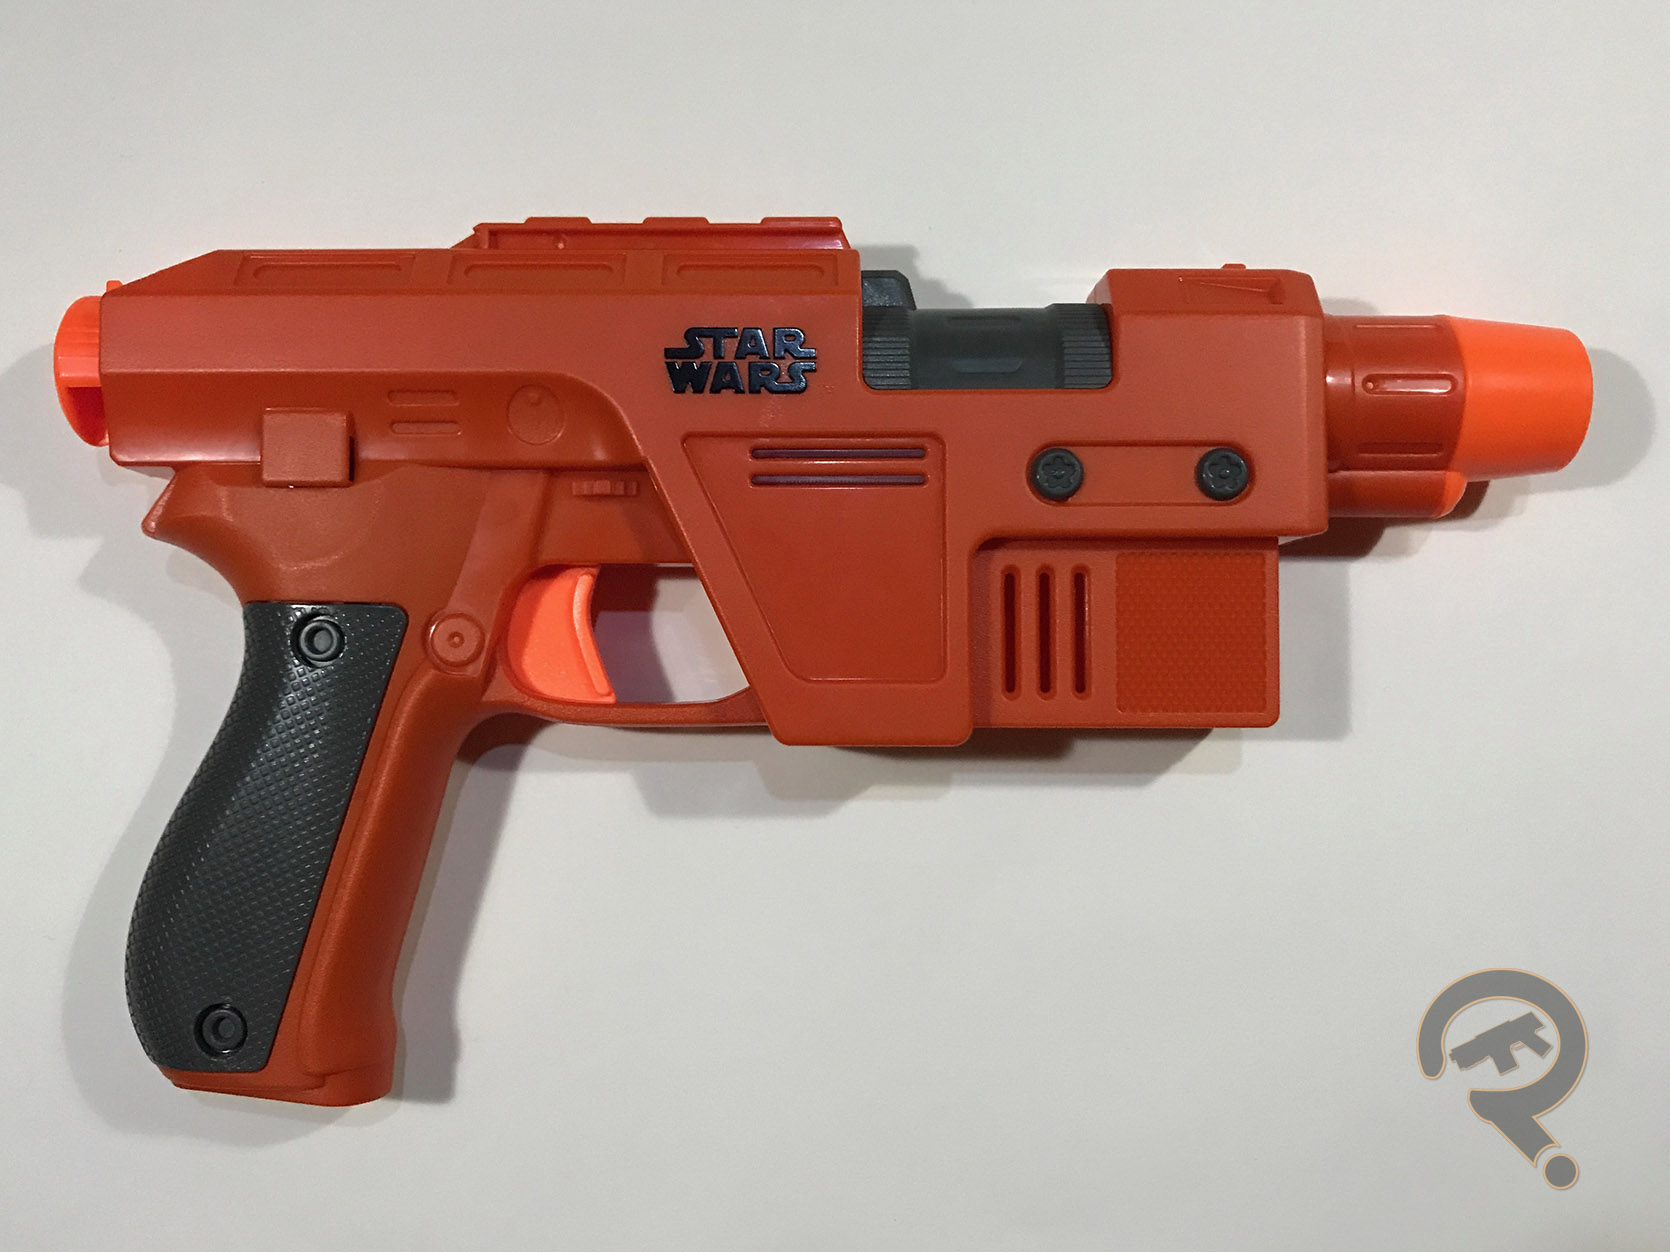 Star Wars Nerf Poe Dameron Blaster Toy Gun at best price in Mumbai